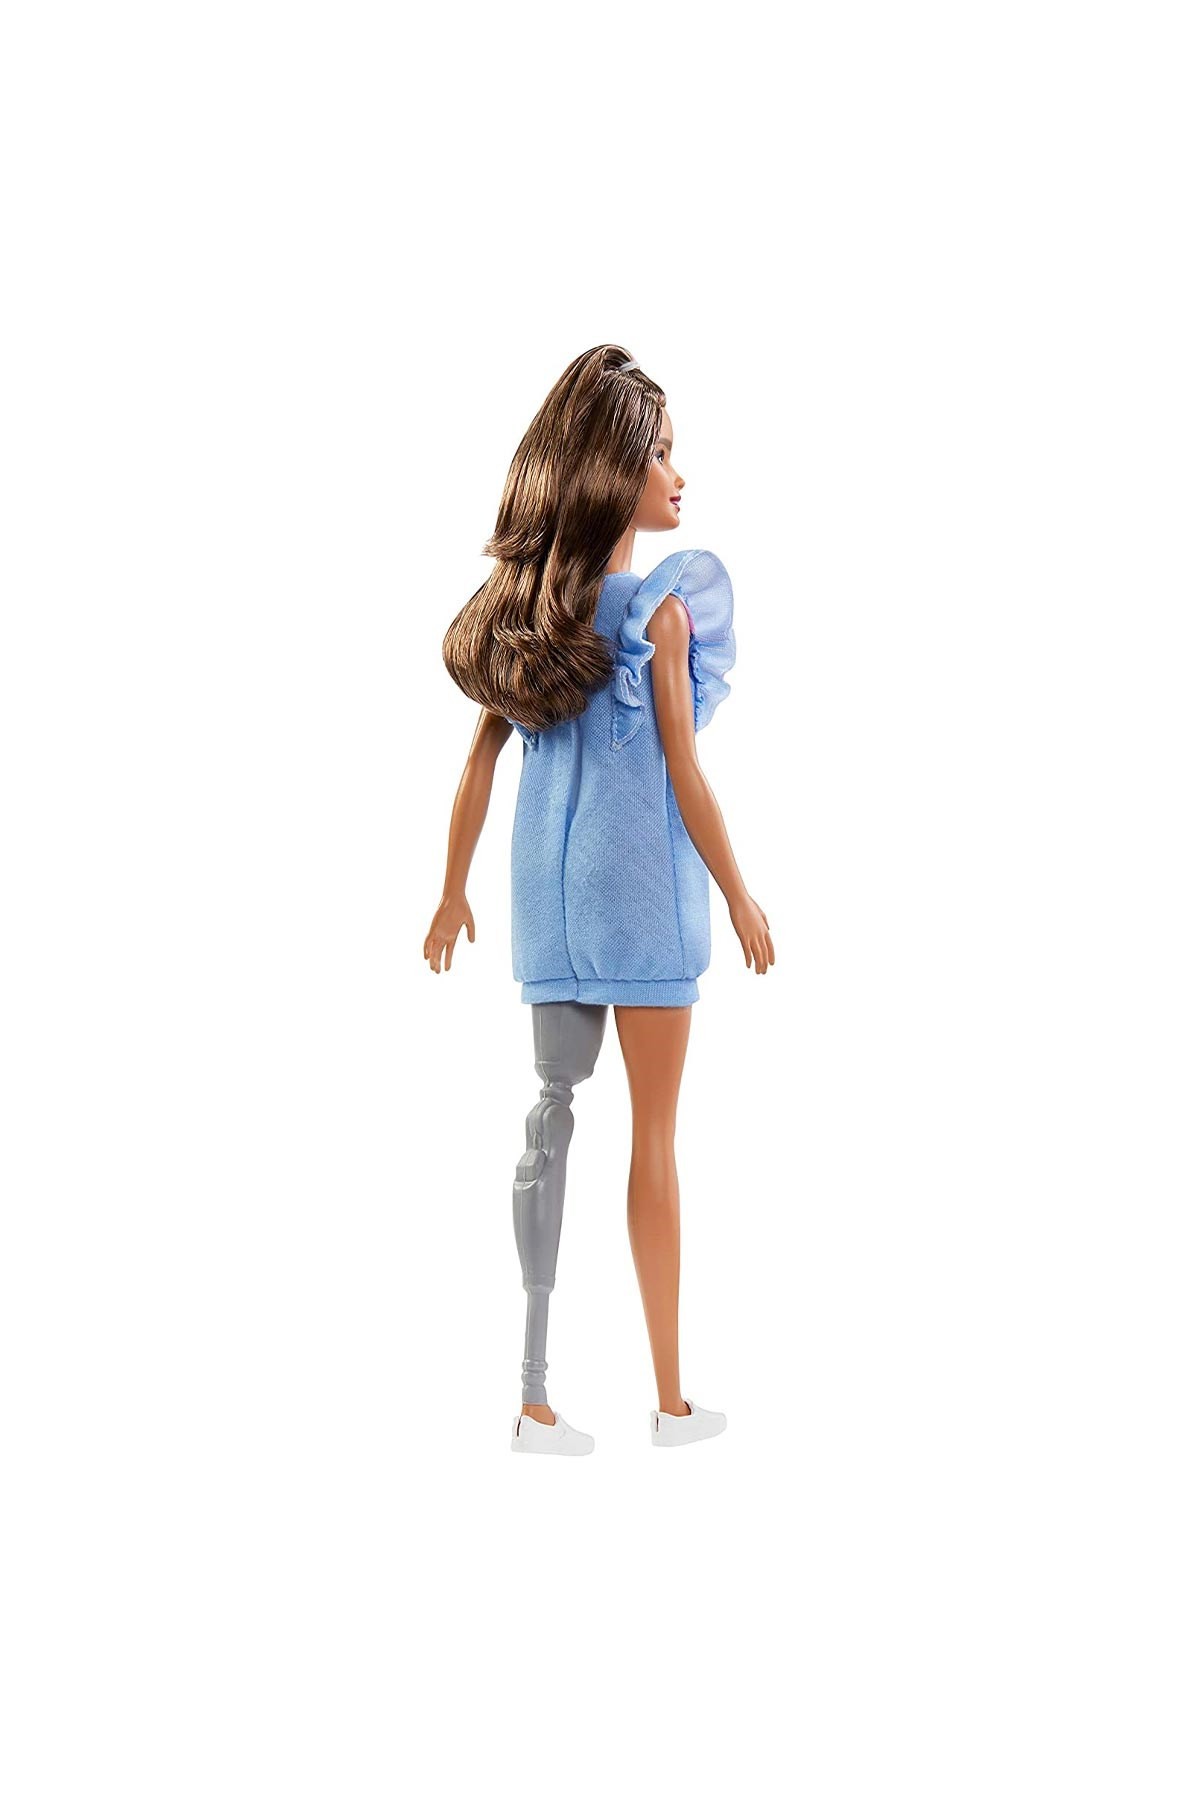 Barbie Fashionistas Bebek ve Aksesuarları Protez Bacaklı FXL54